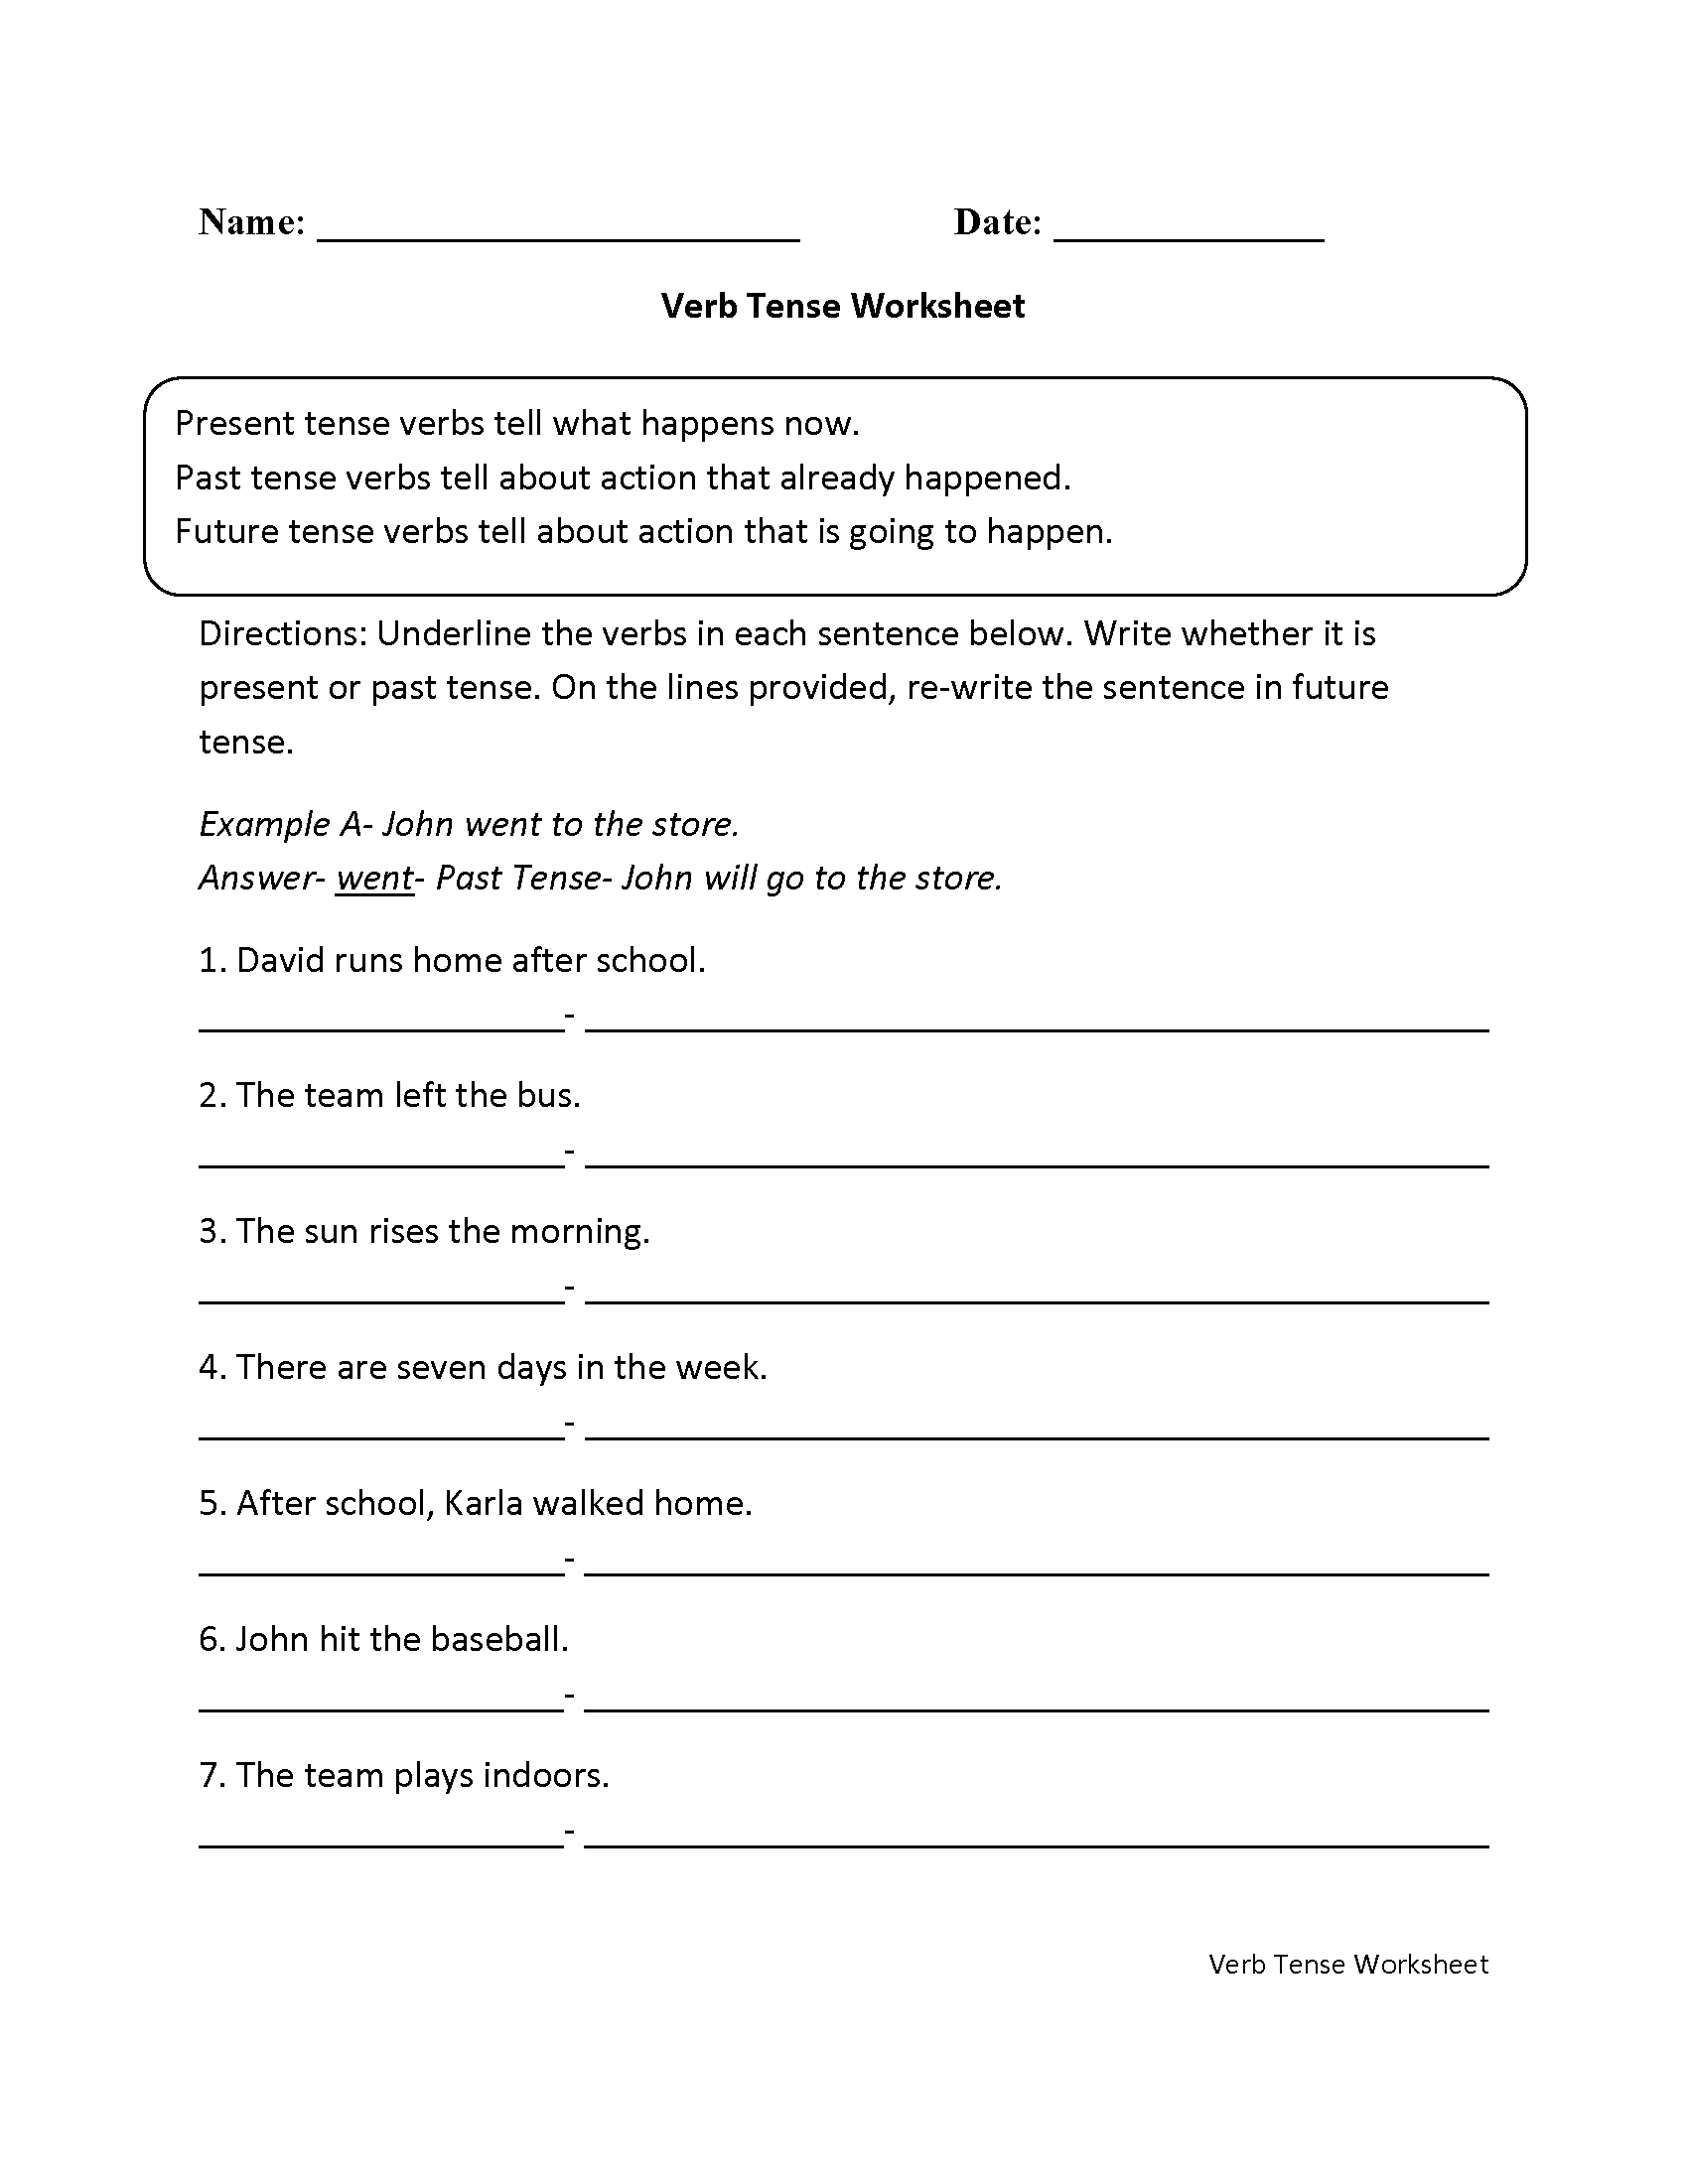 past-tense-verb-practice-worksheets-99worksheets